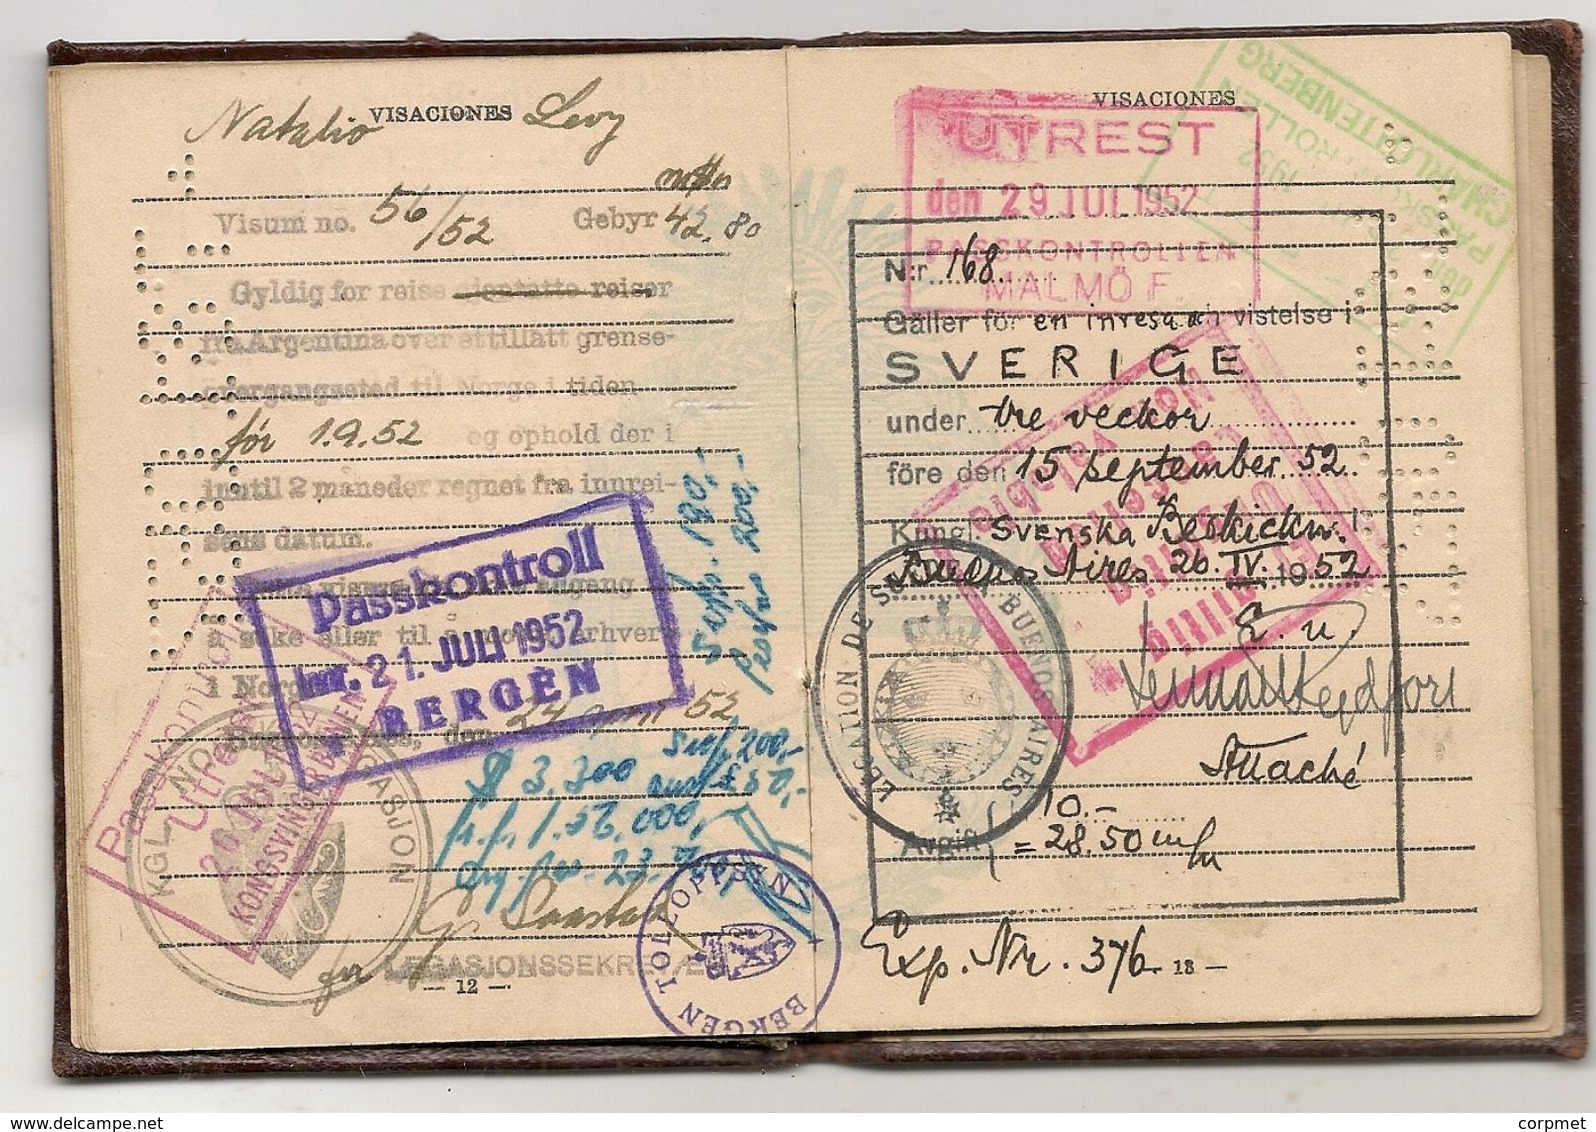 ARGENTINA 1951 PASSPORT- PASSEPORT -multiple VISAS and STAMPS - UK - ISRAEL - BELGIQUE - FRANCE - NEDERLANDS - SWEDEN